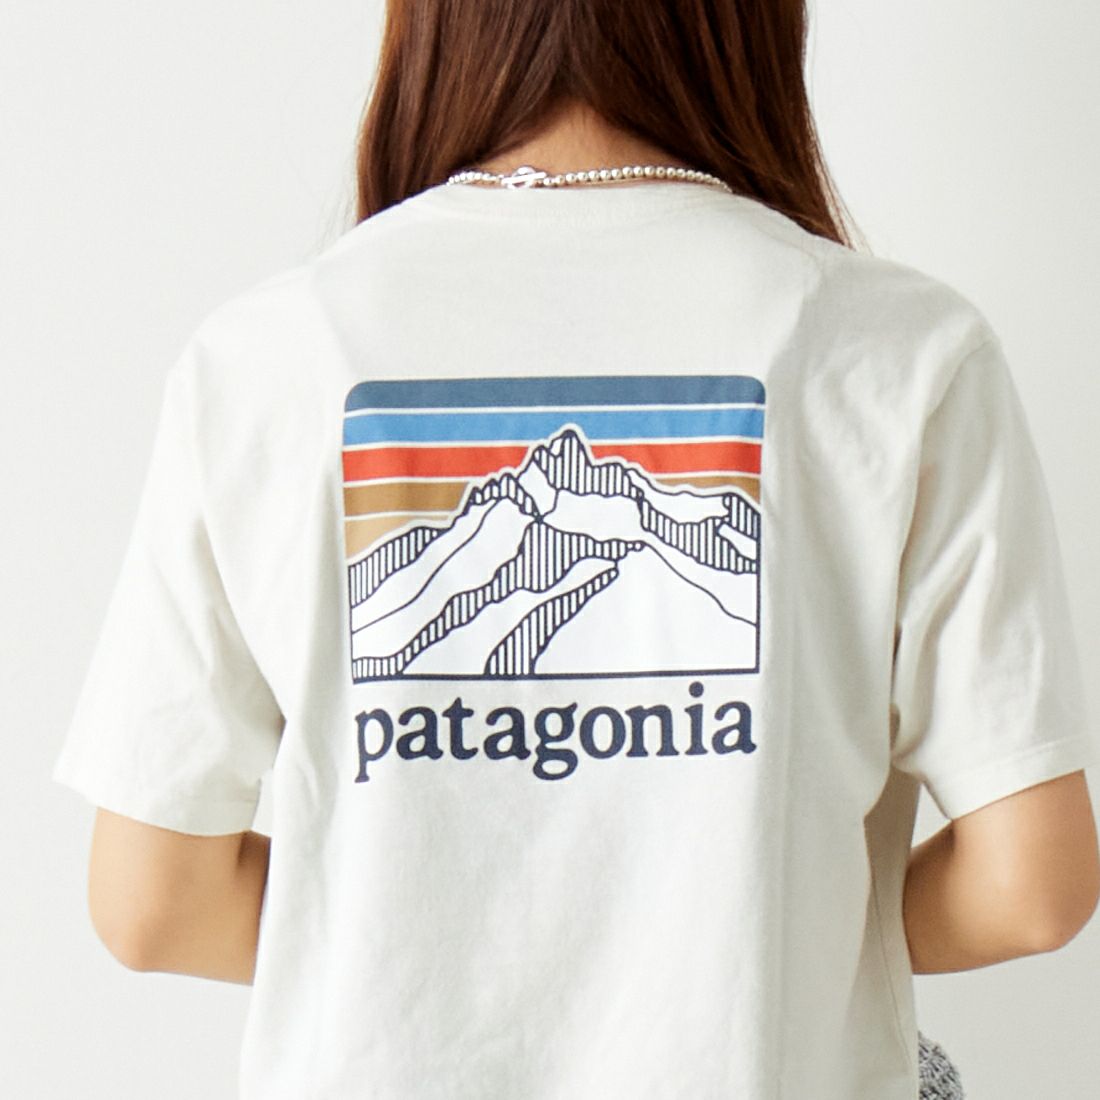 patagonia [パタゴニア] ラインロゴリッジ ポケットレスポンシビリティー [38511] BCW